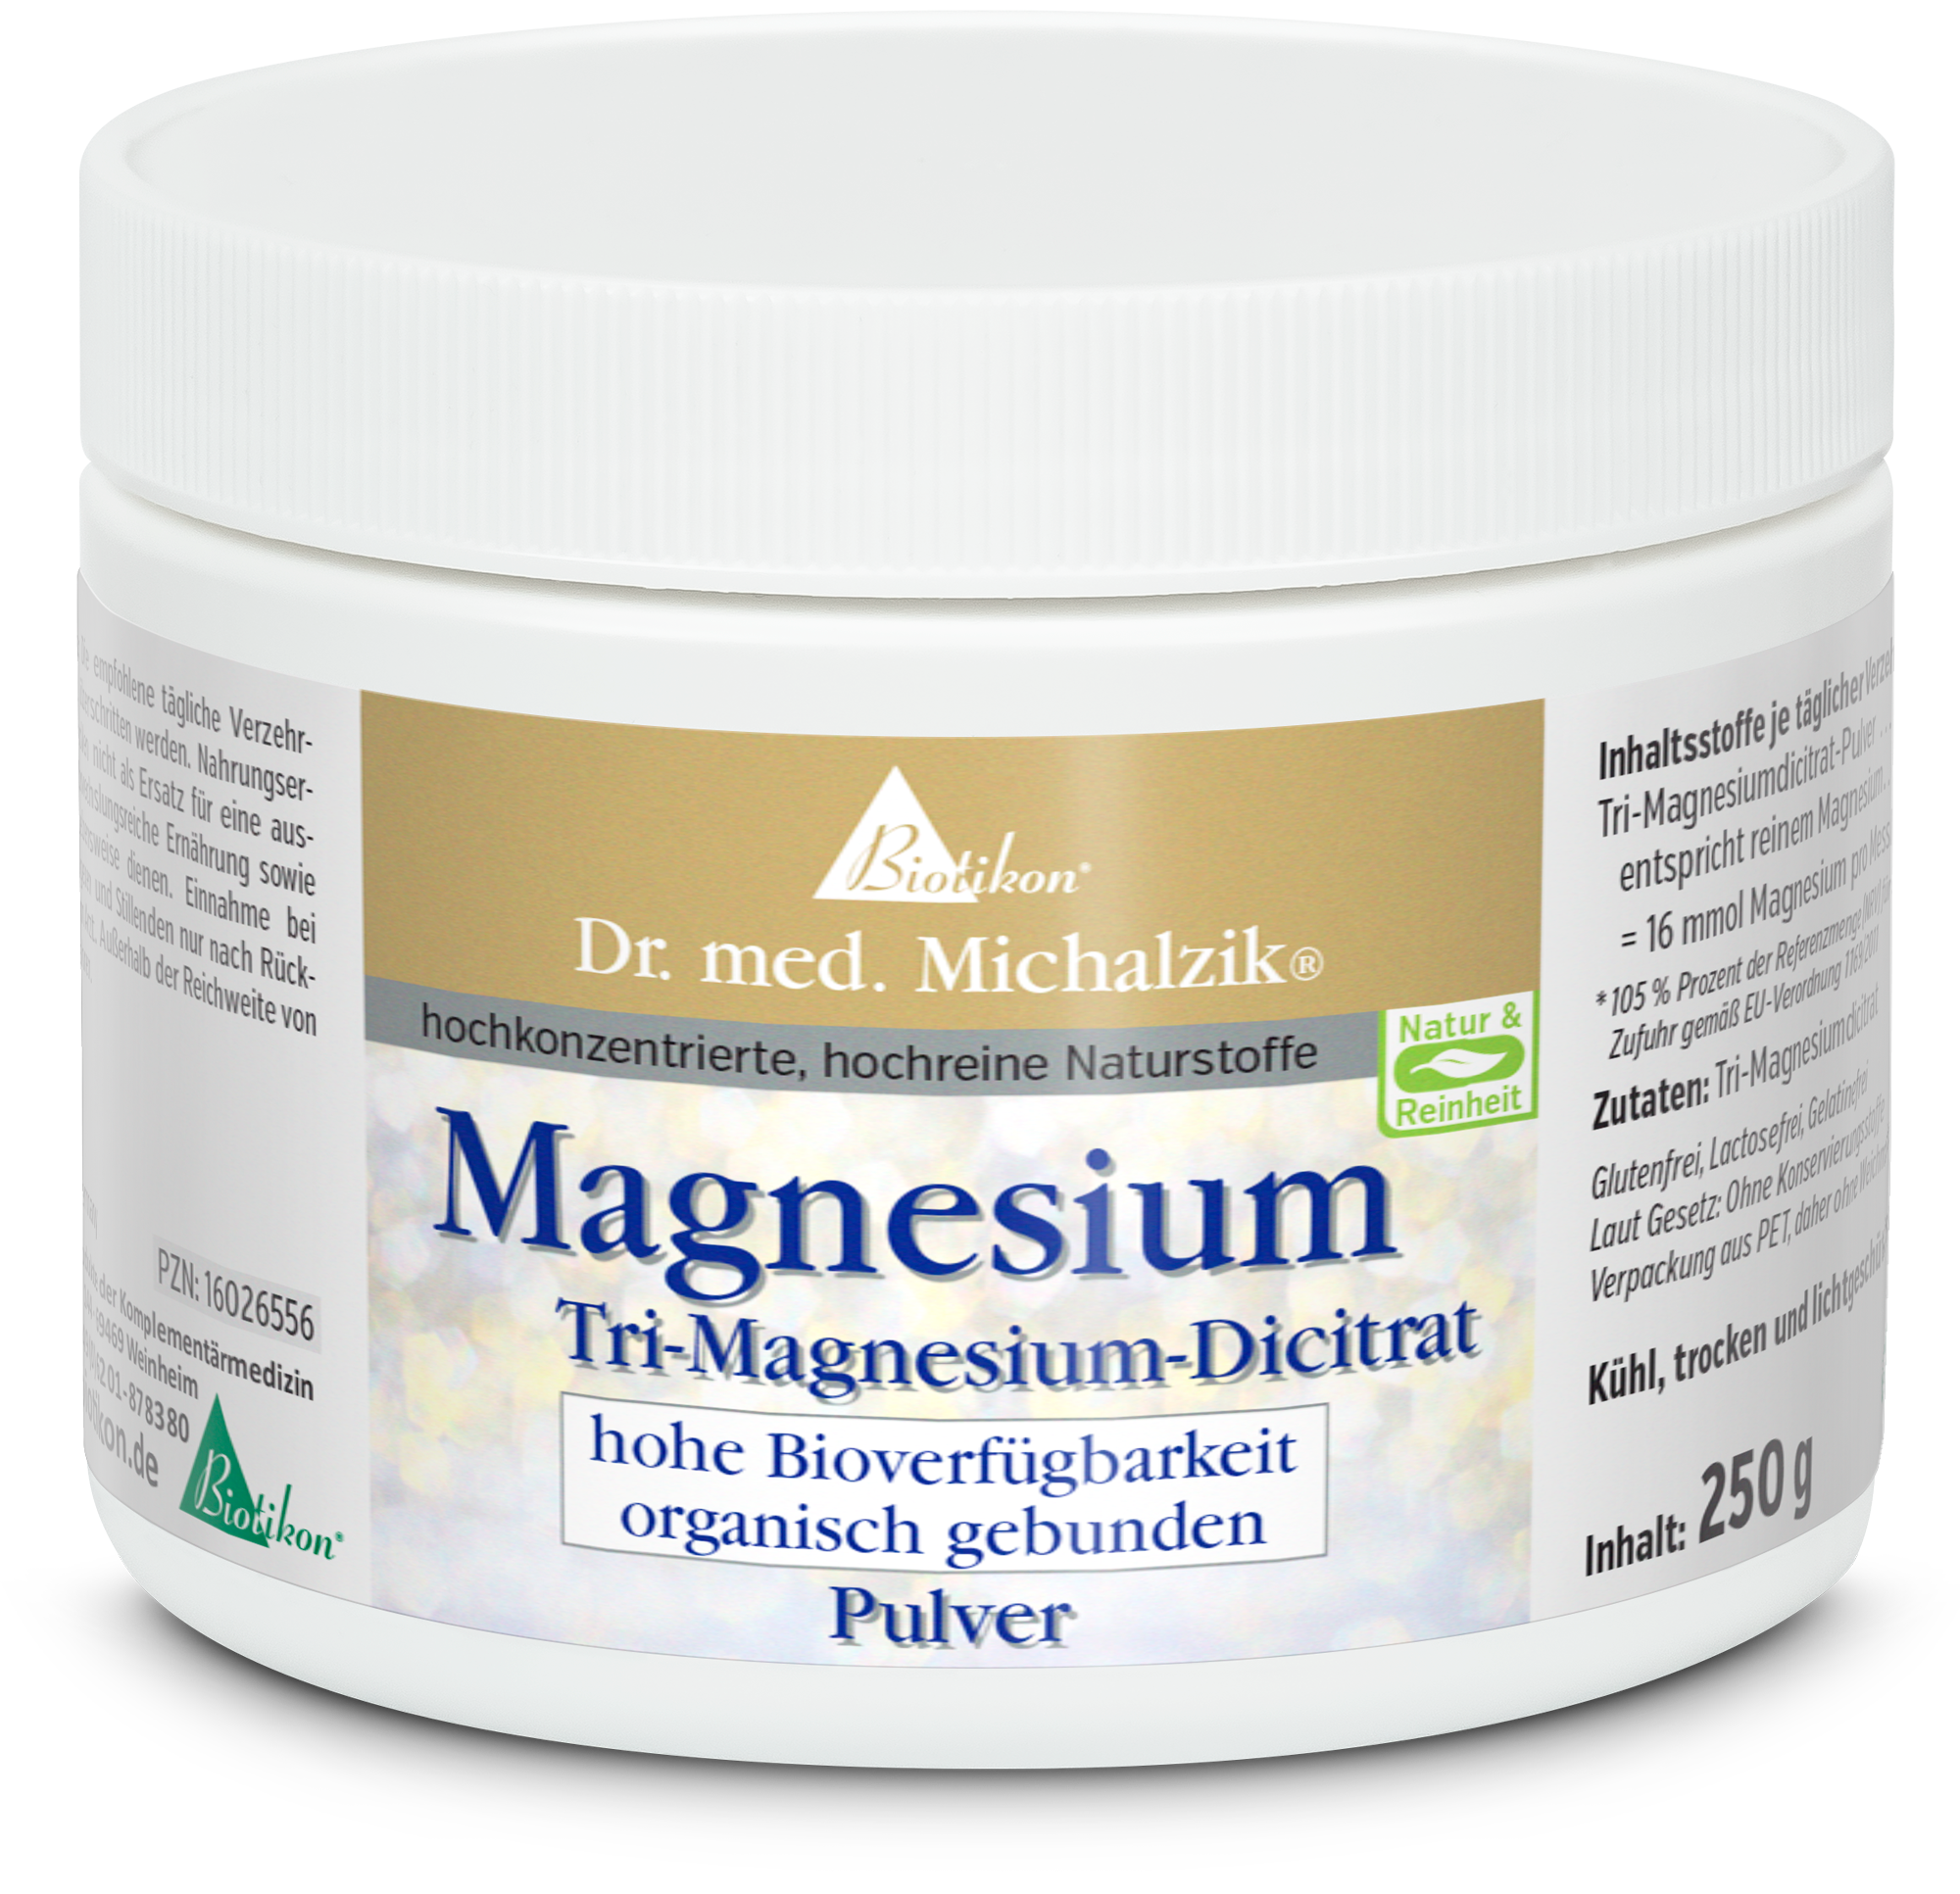 Magnesium - Tri-magnesium dicitrate (Powder)